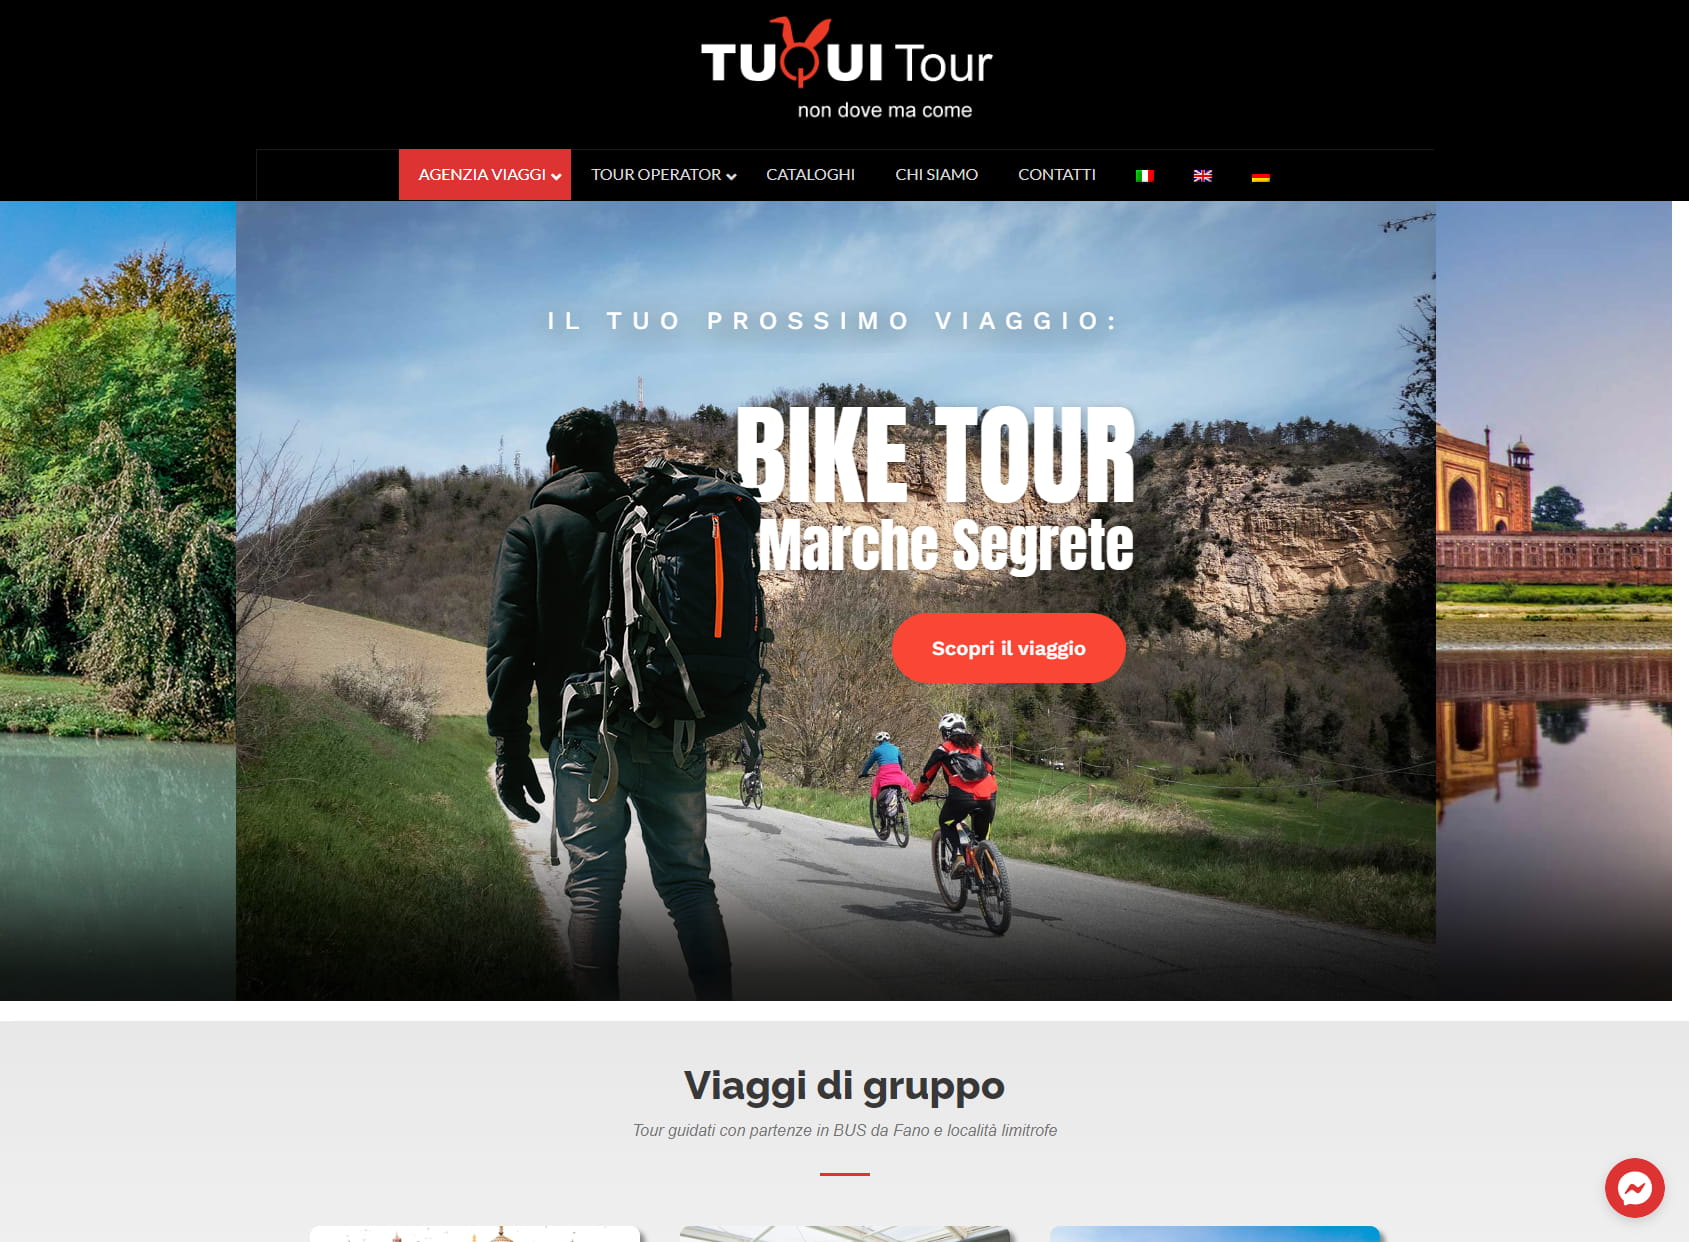 Tuqui Tour - Agenzia Viaggi Fano & Tour Operator Marche